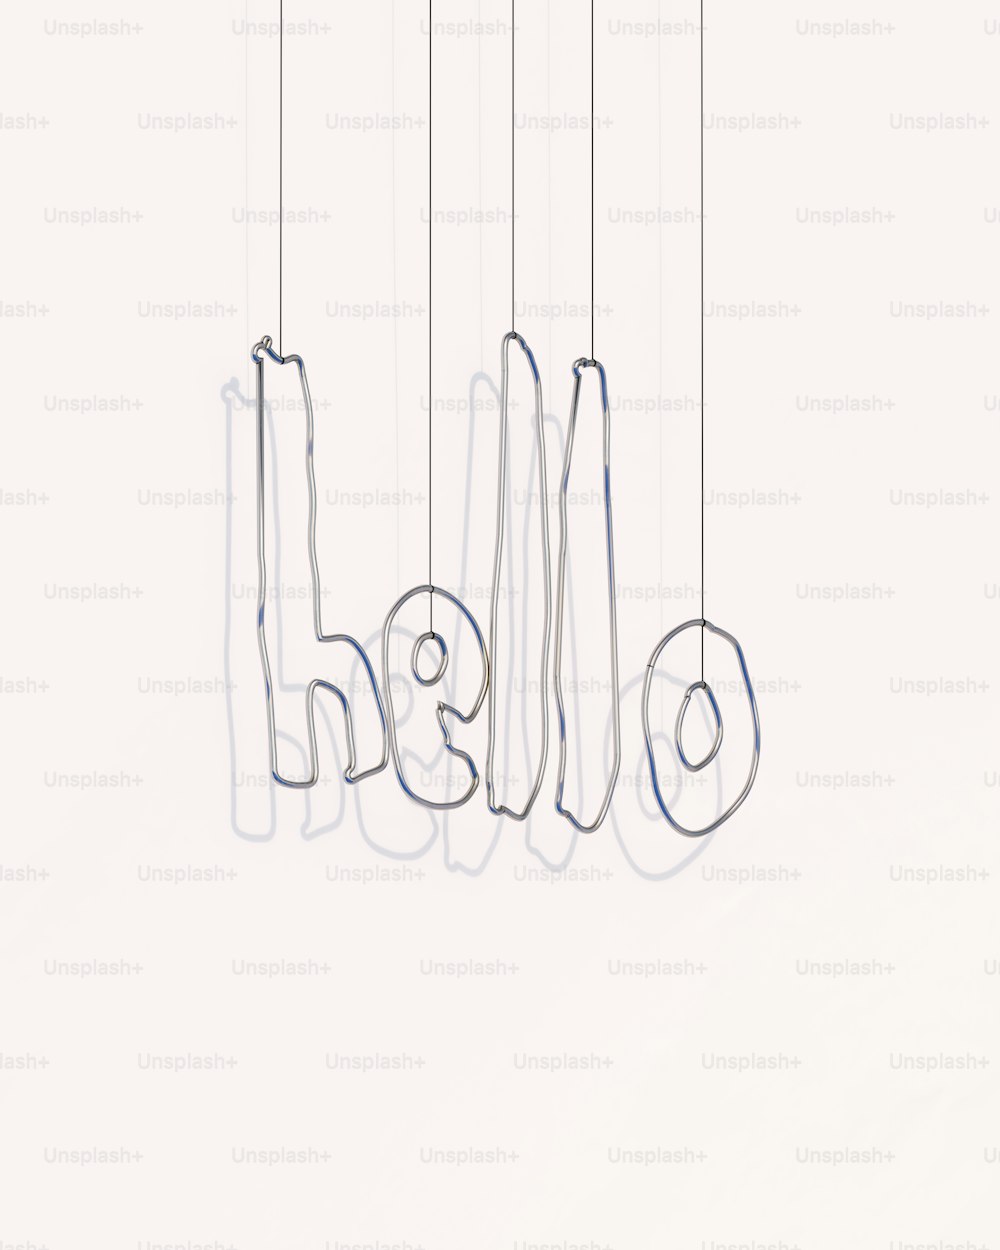 eine Zeichnung einer Gruppe von Buchstaben, die an Schnüren hängen